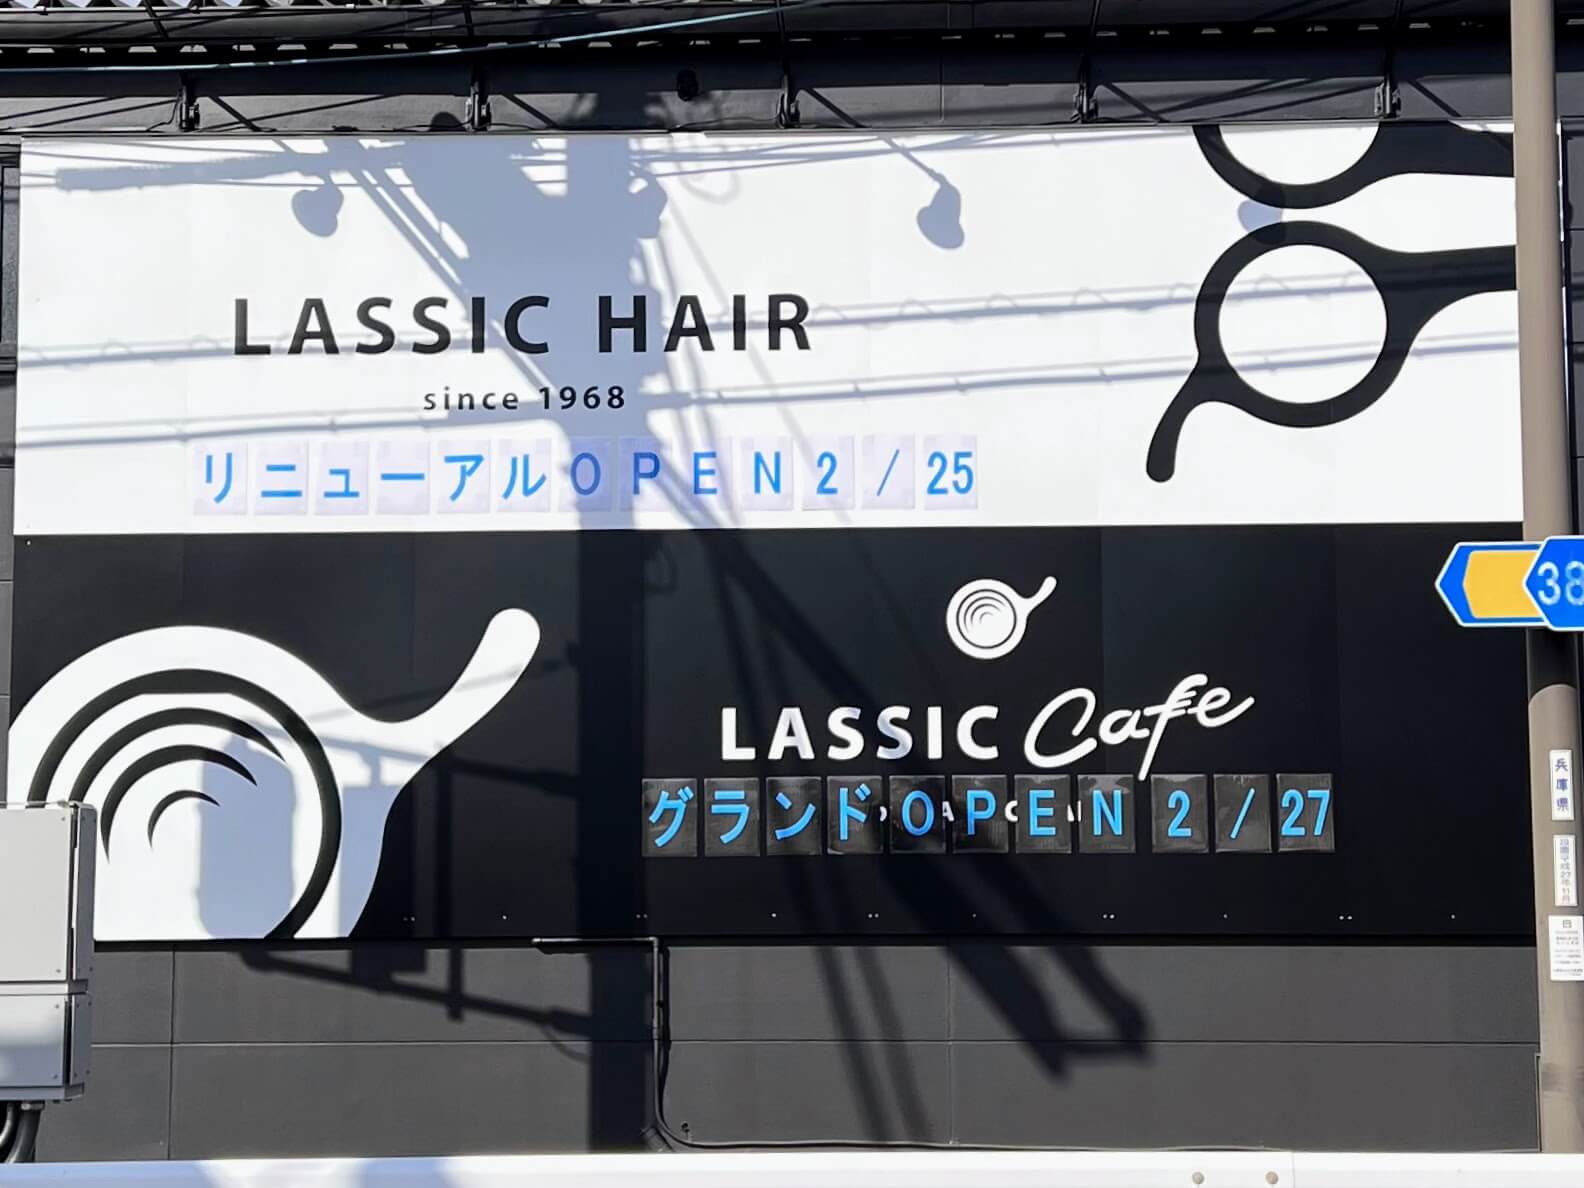 LASSIC CafeオープンとLASSIC HAIR加古川店リニューアルの書かれた看板